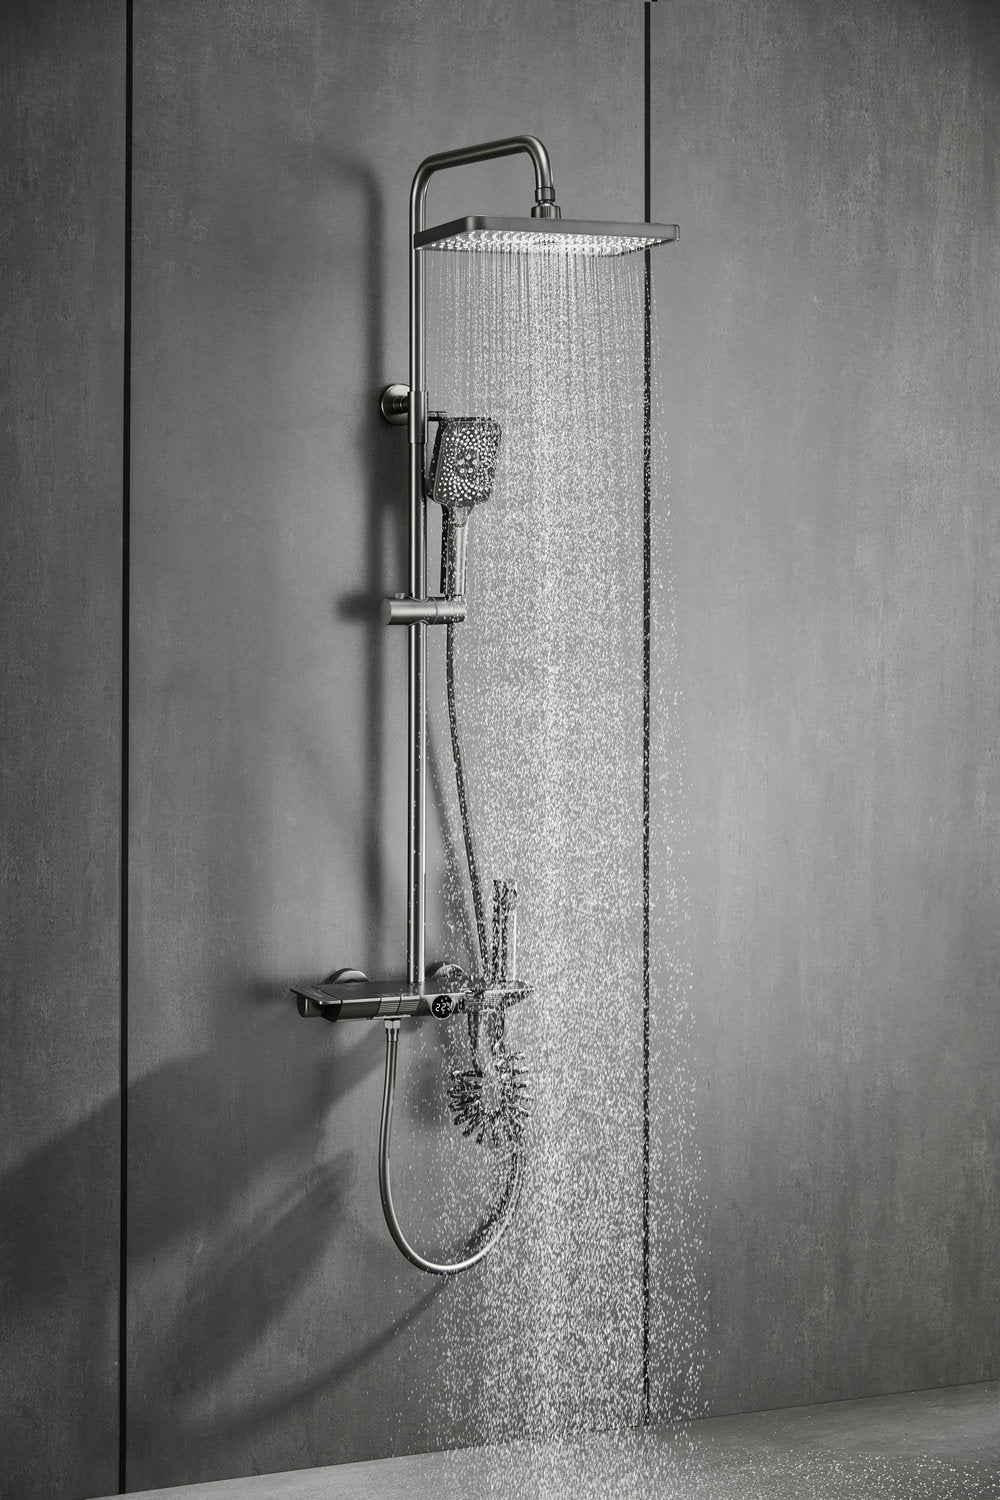 Sistema de ducha Acquacon con indicador de temperaturacon y 4 modos de salida de agua